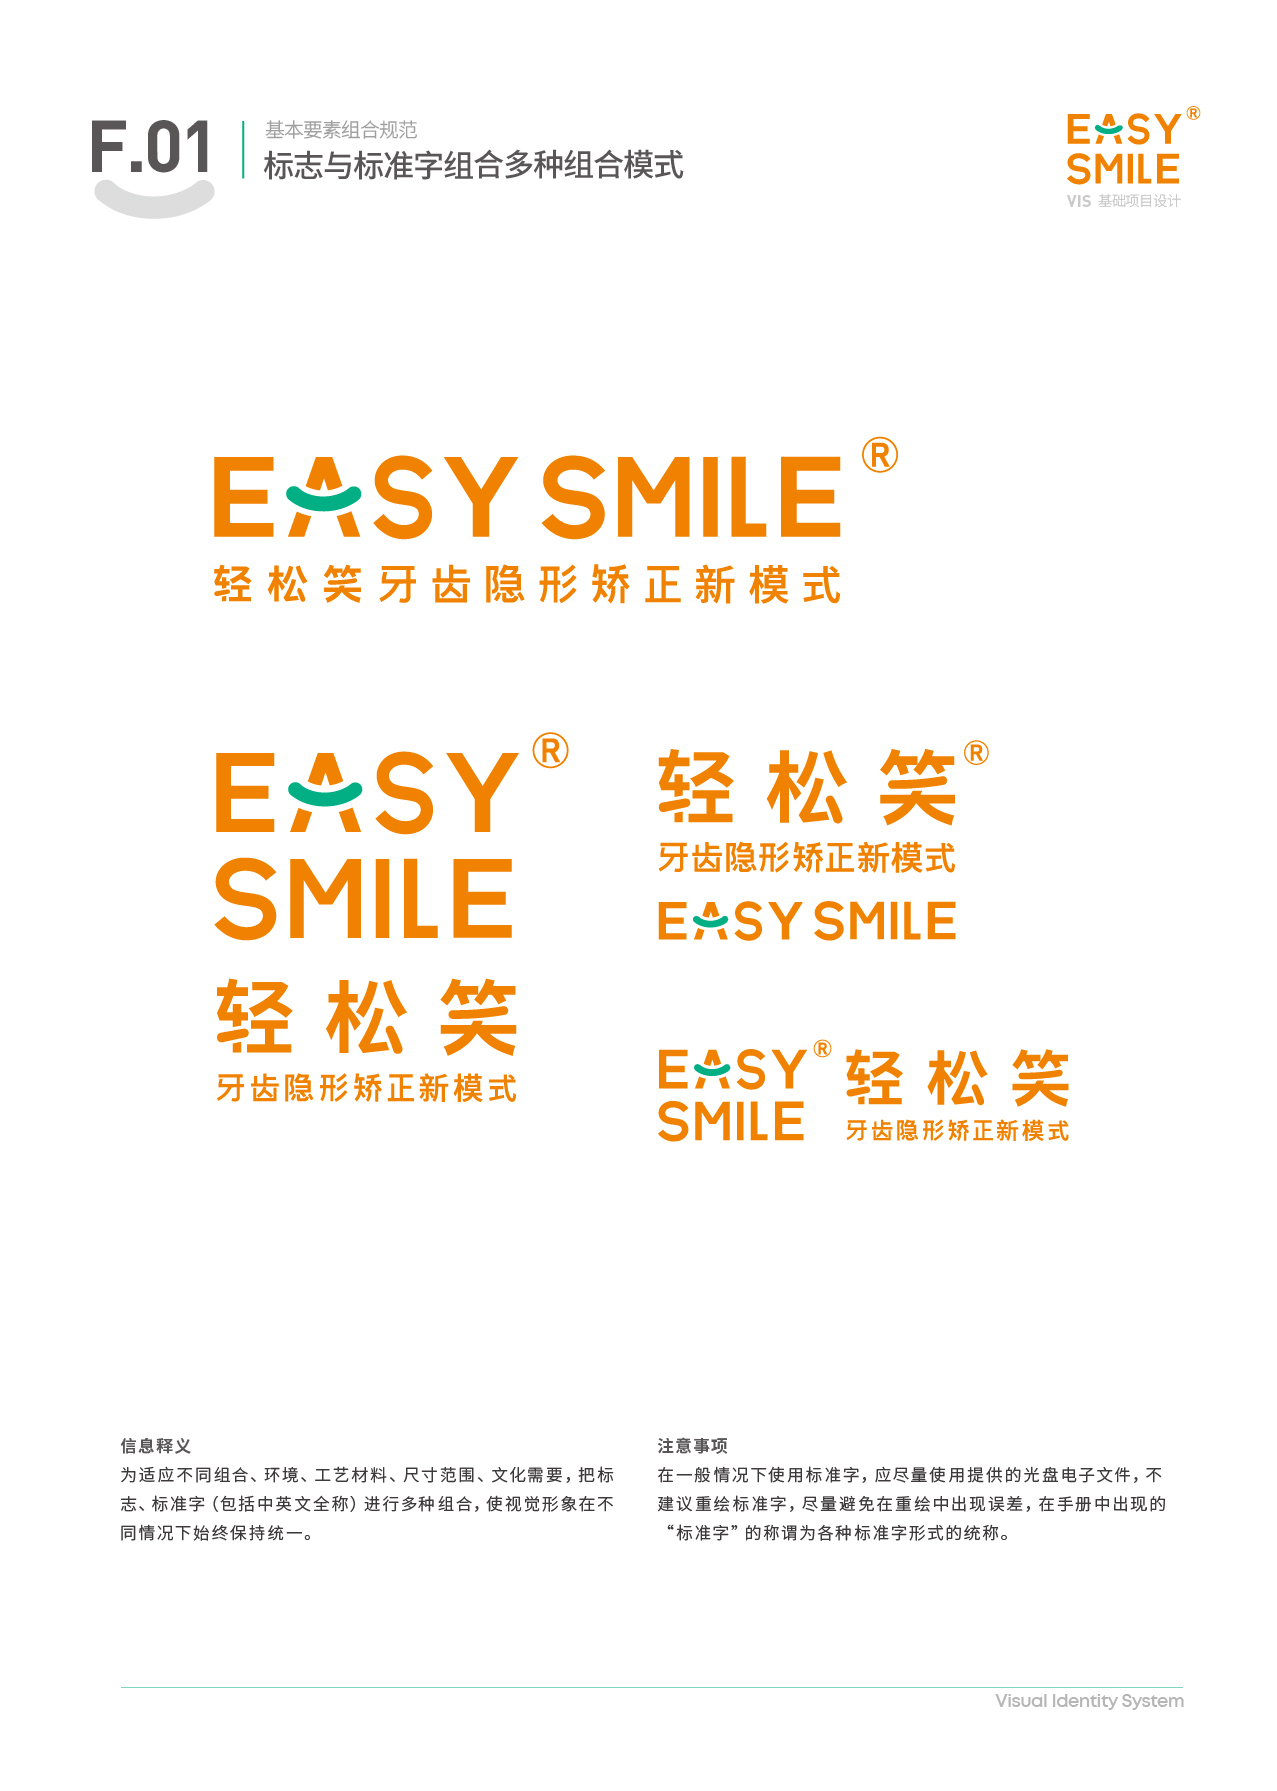 Easysmile 轻松笑品牌VIS图29